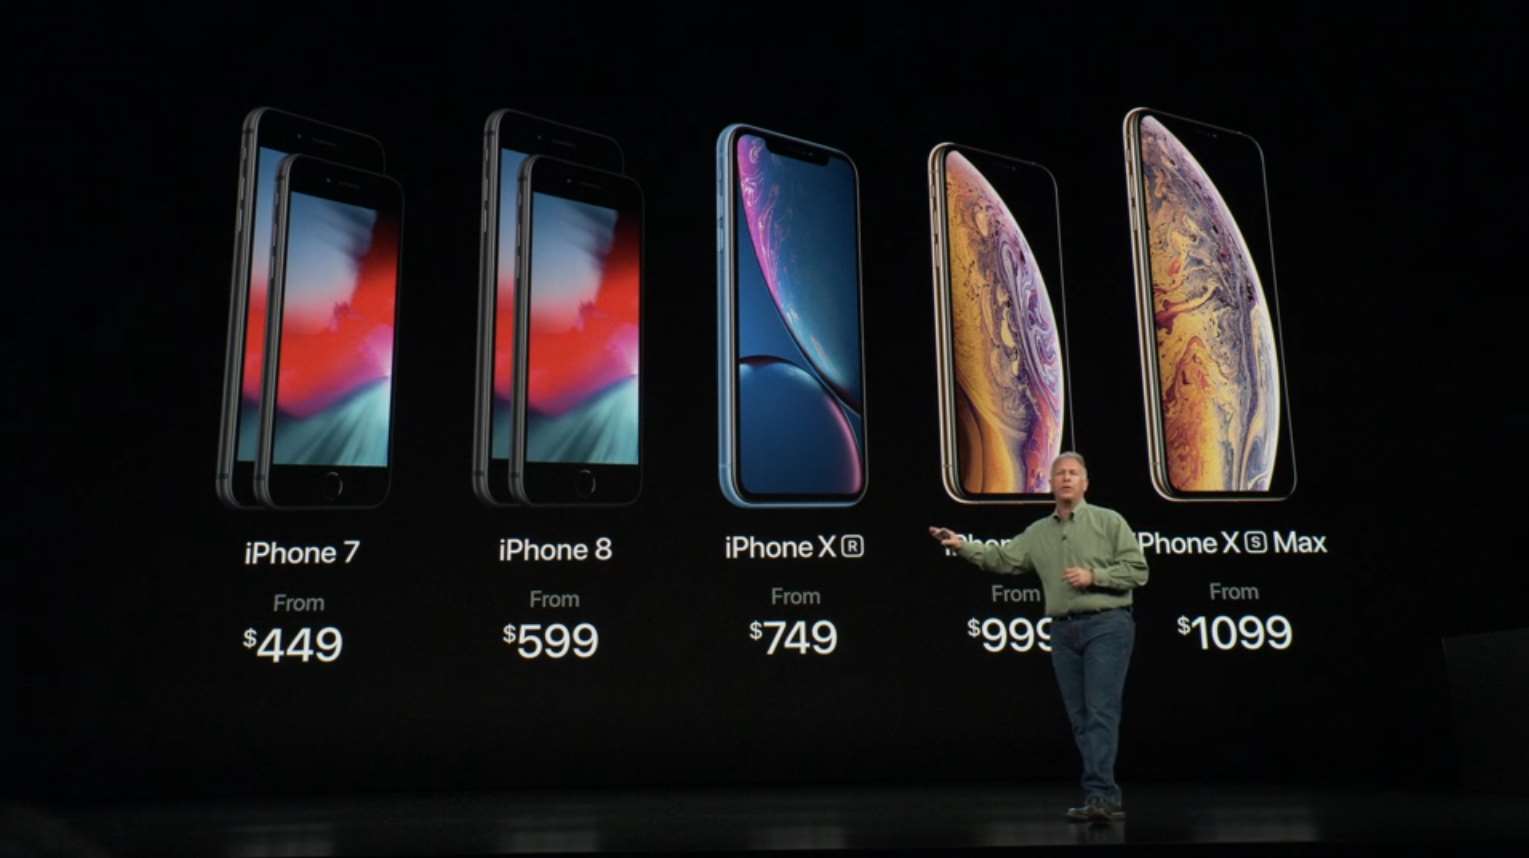 Galerie - Žena žaluje Apple za to, že má její iPhone výřez obrazovky. Z reklam to prý není poznat – Živě.cz